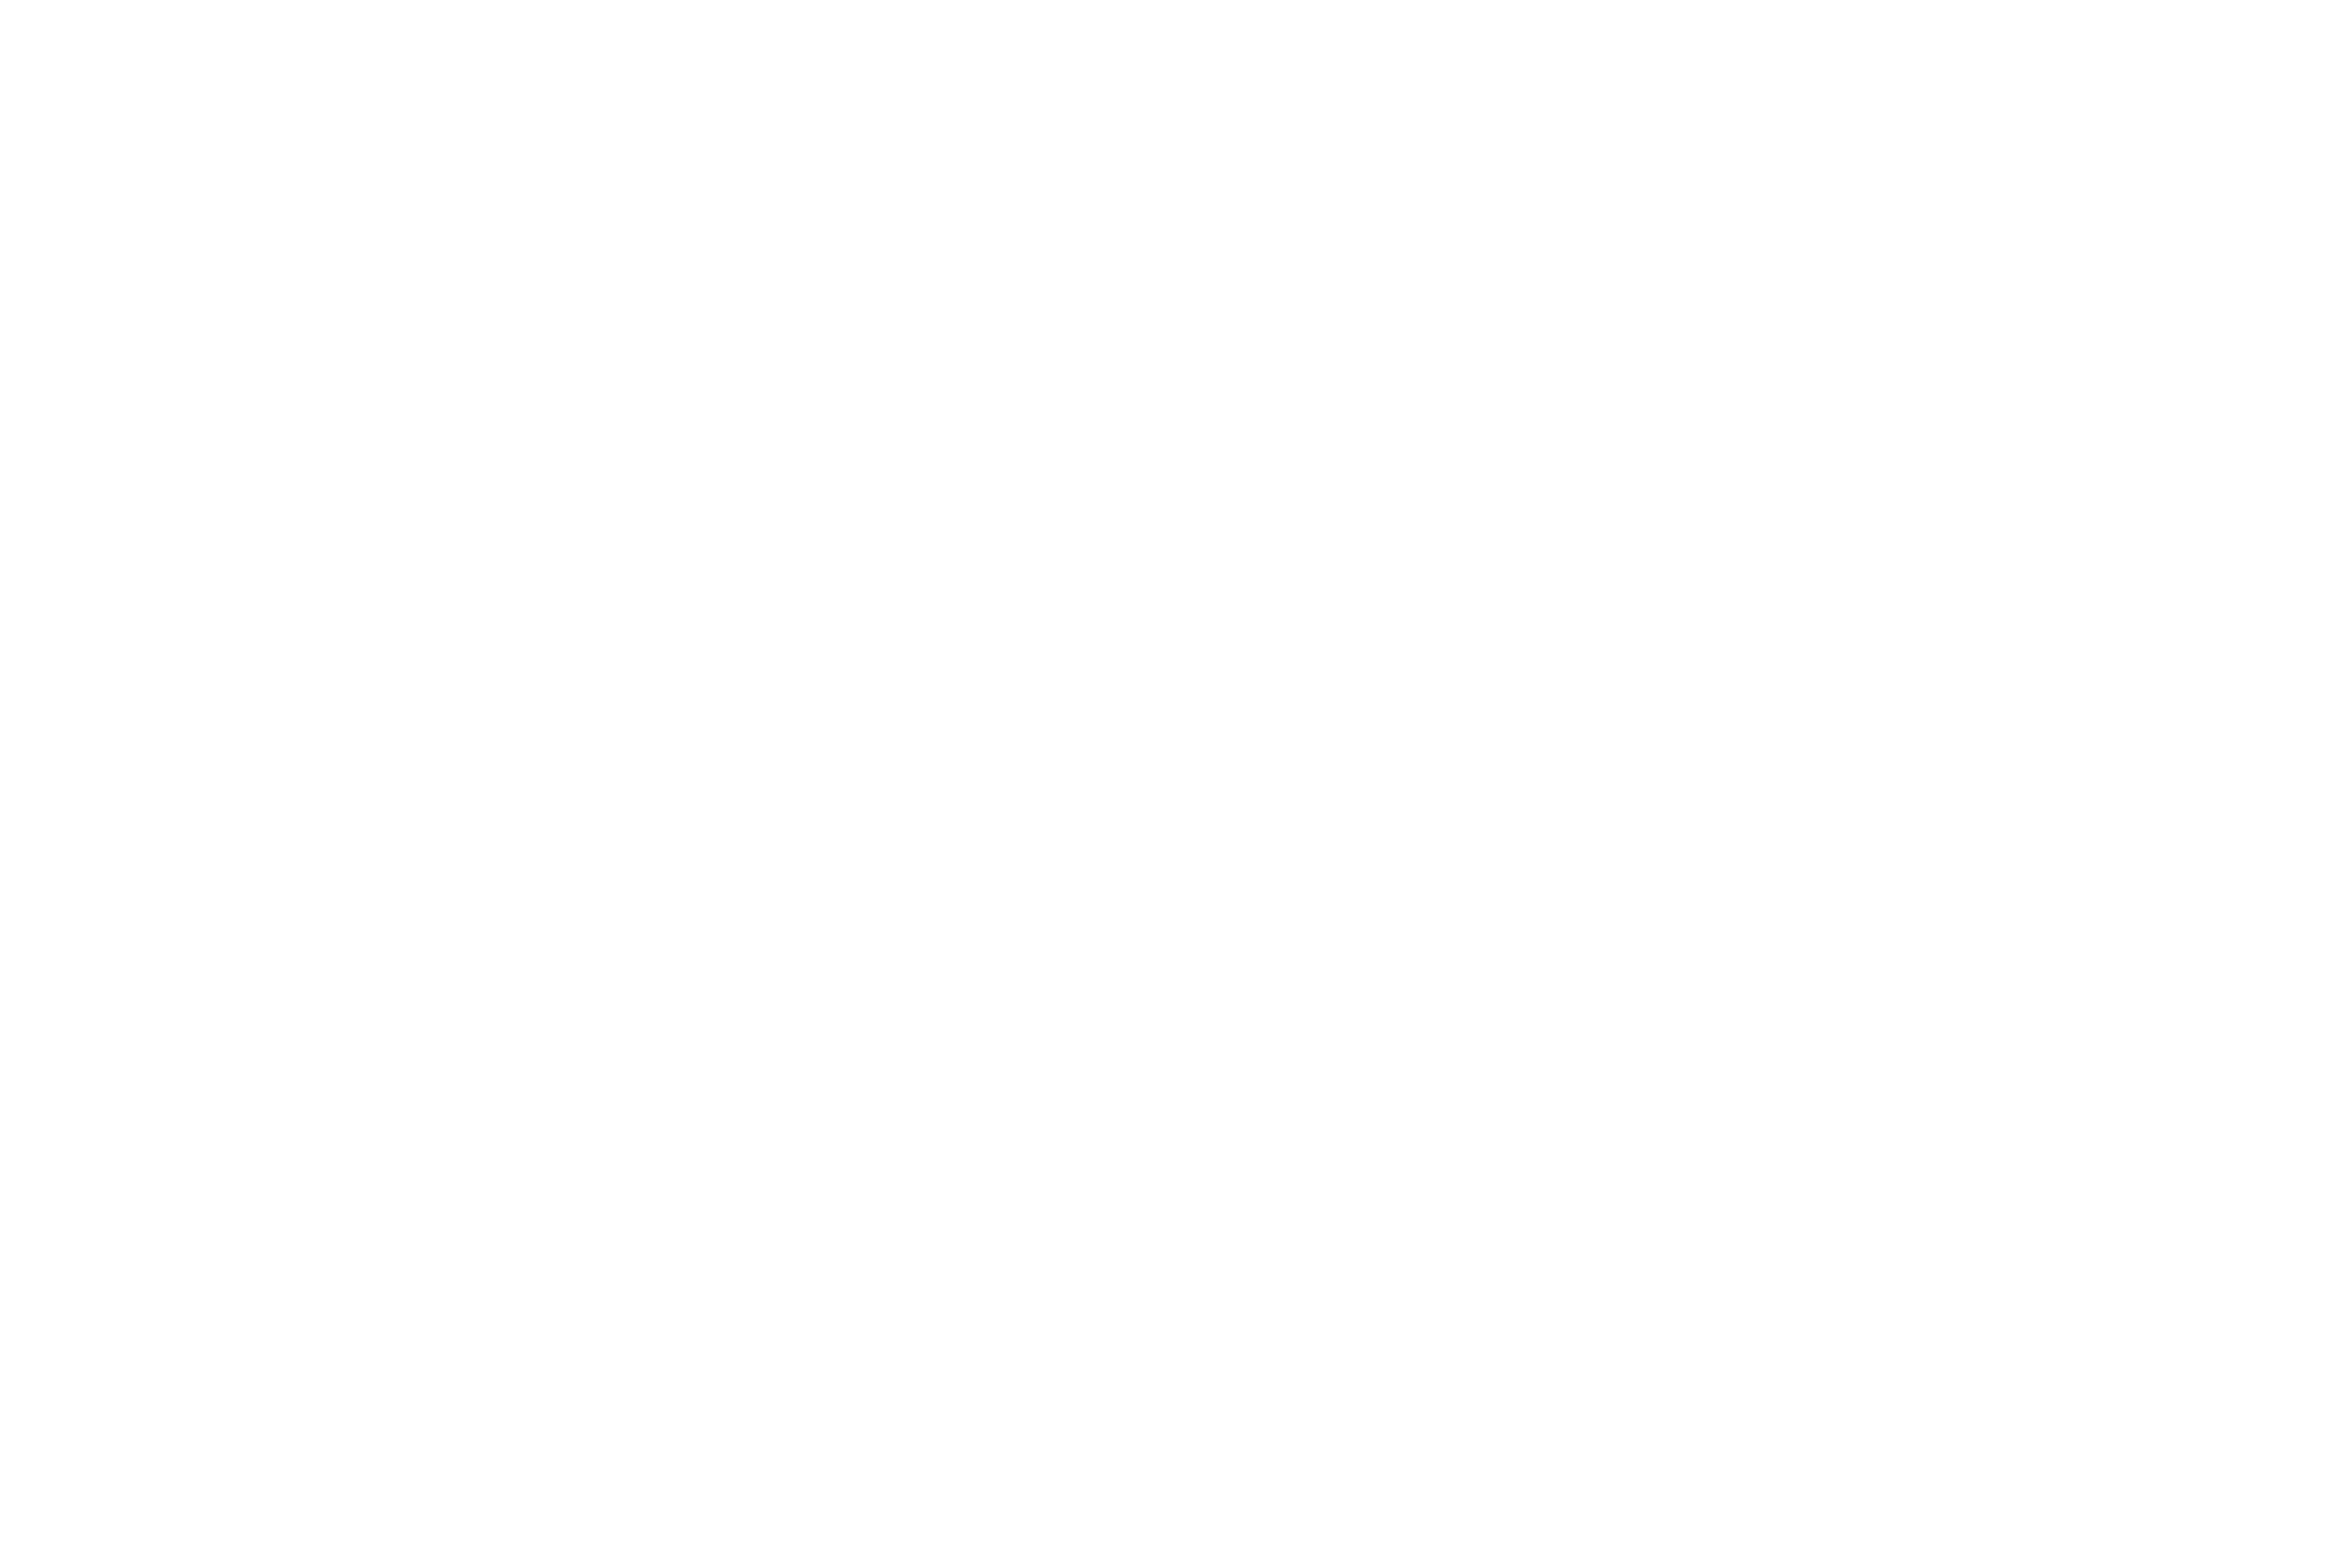 St. John Media